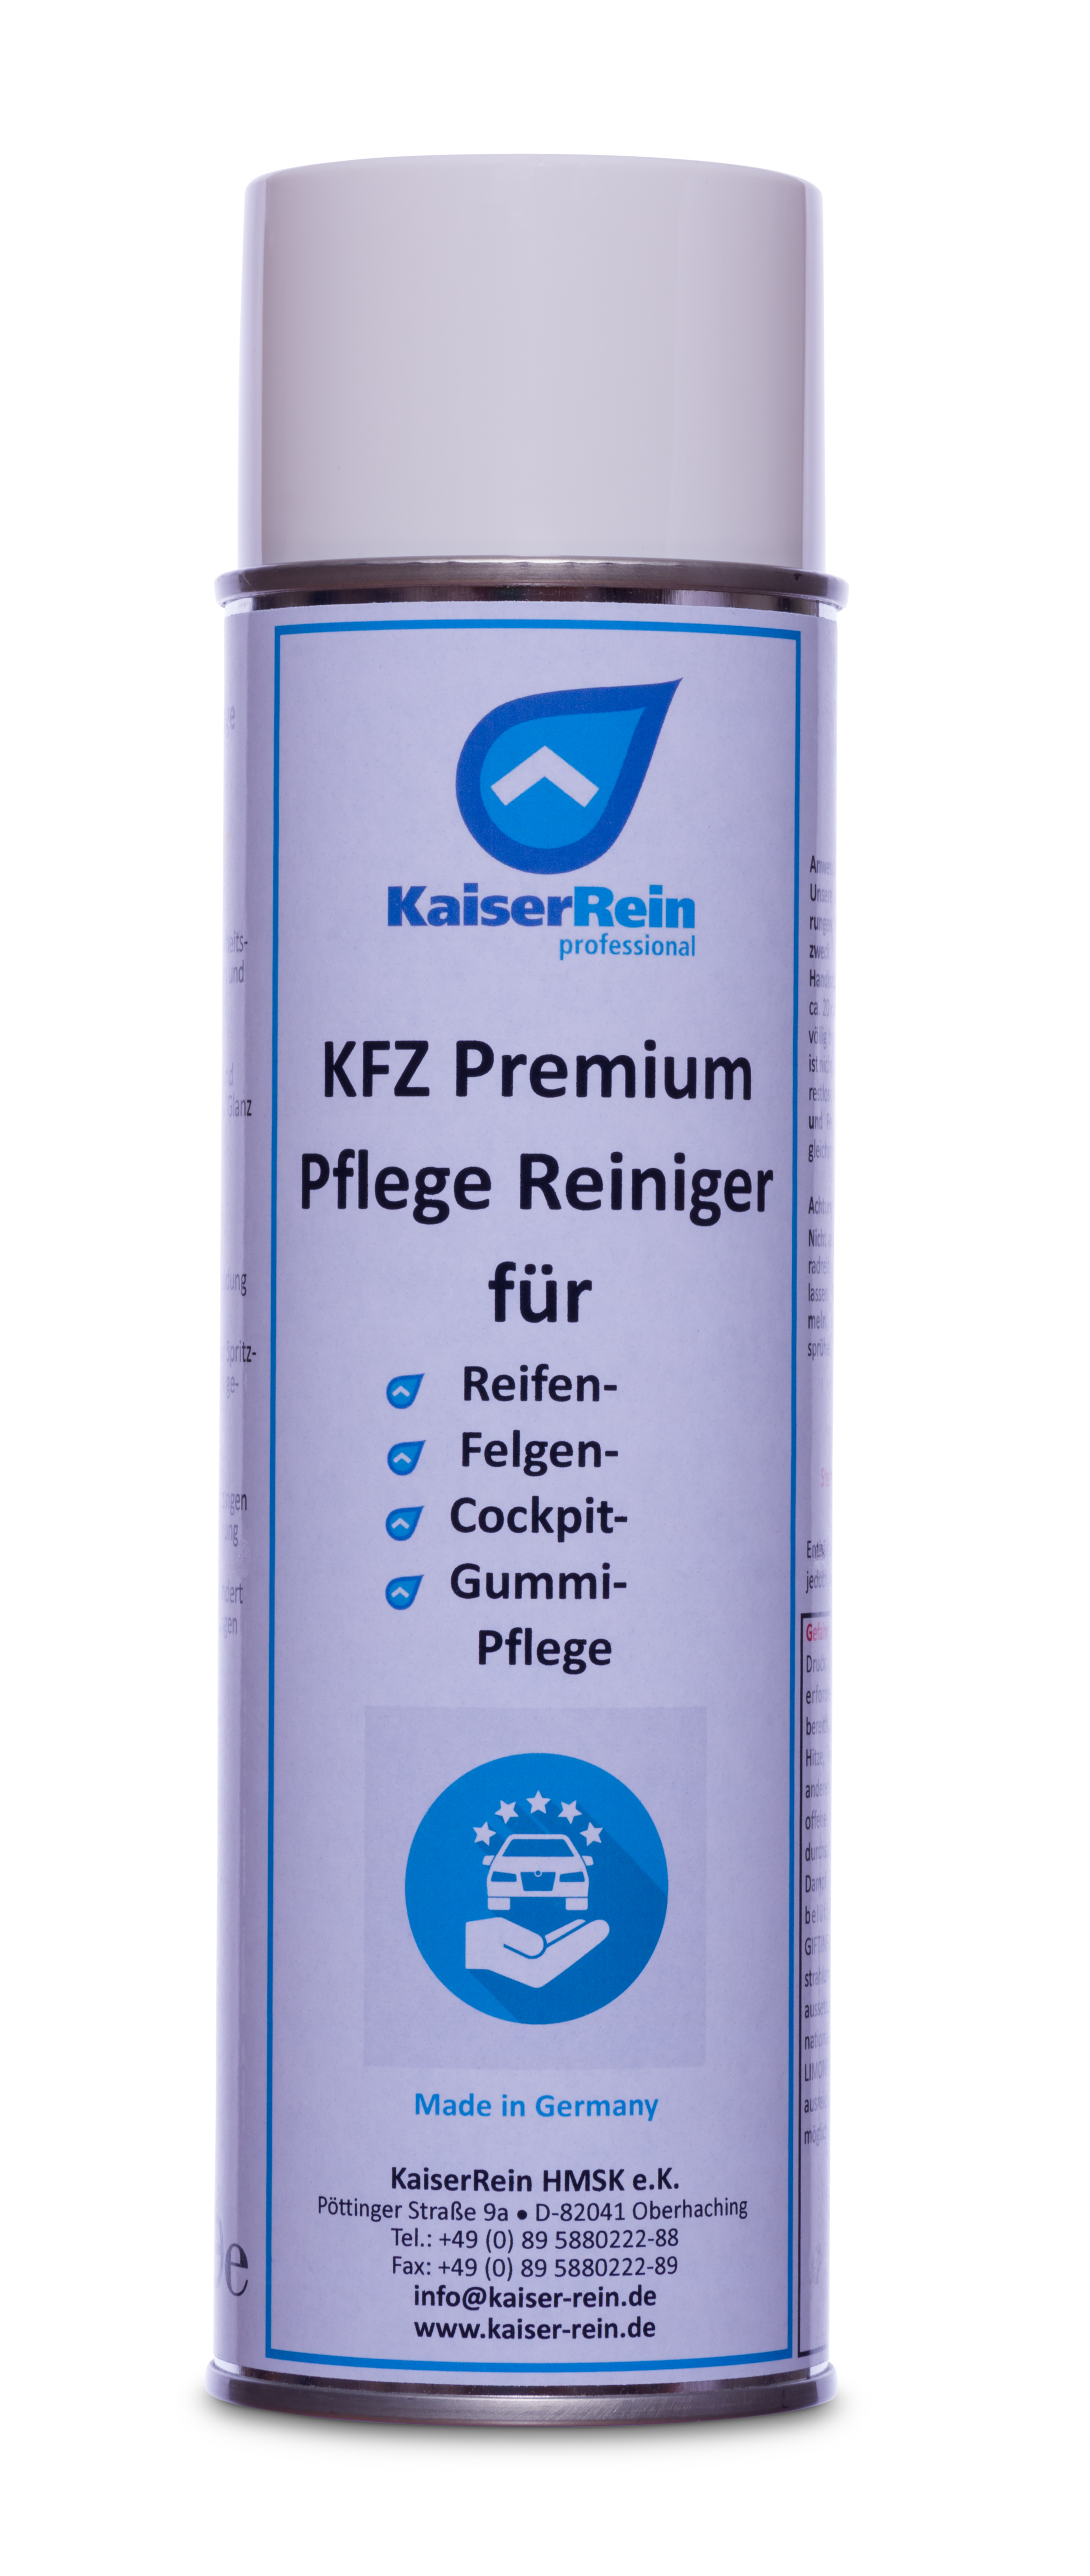 KFZ Premium Pflege Reiniger 500ml für Reifen- Felgen- Cockpit- und Gummipflege